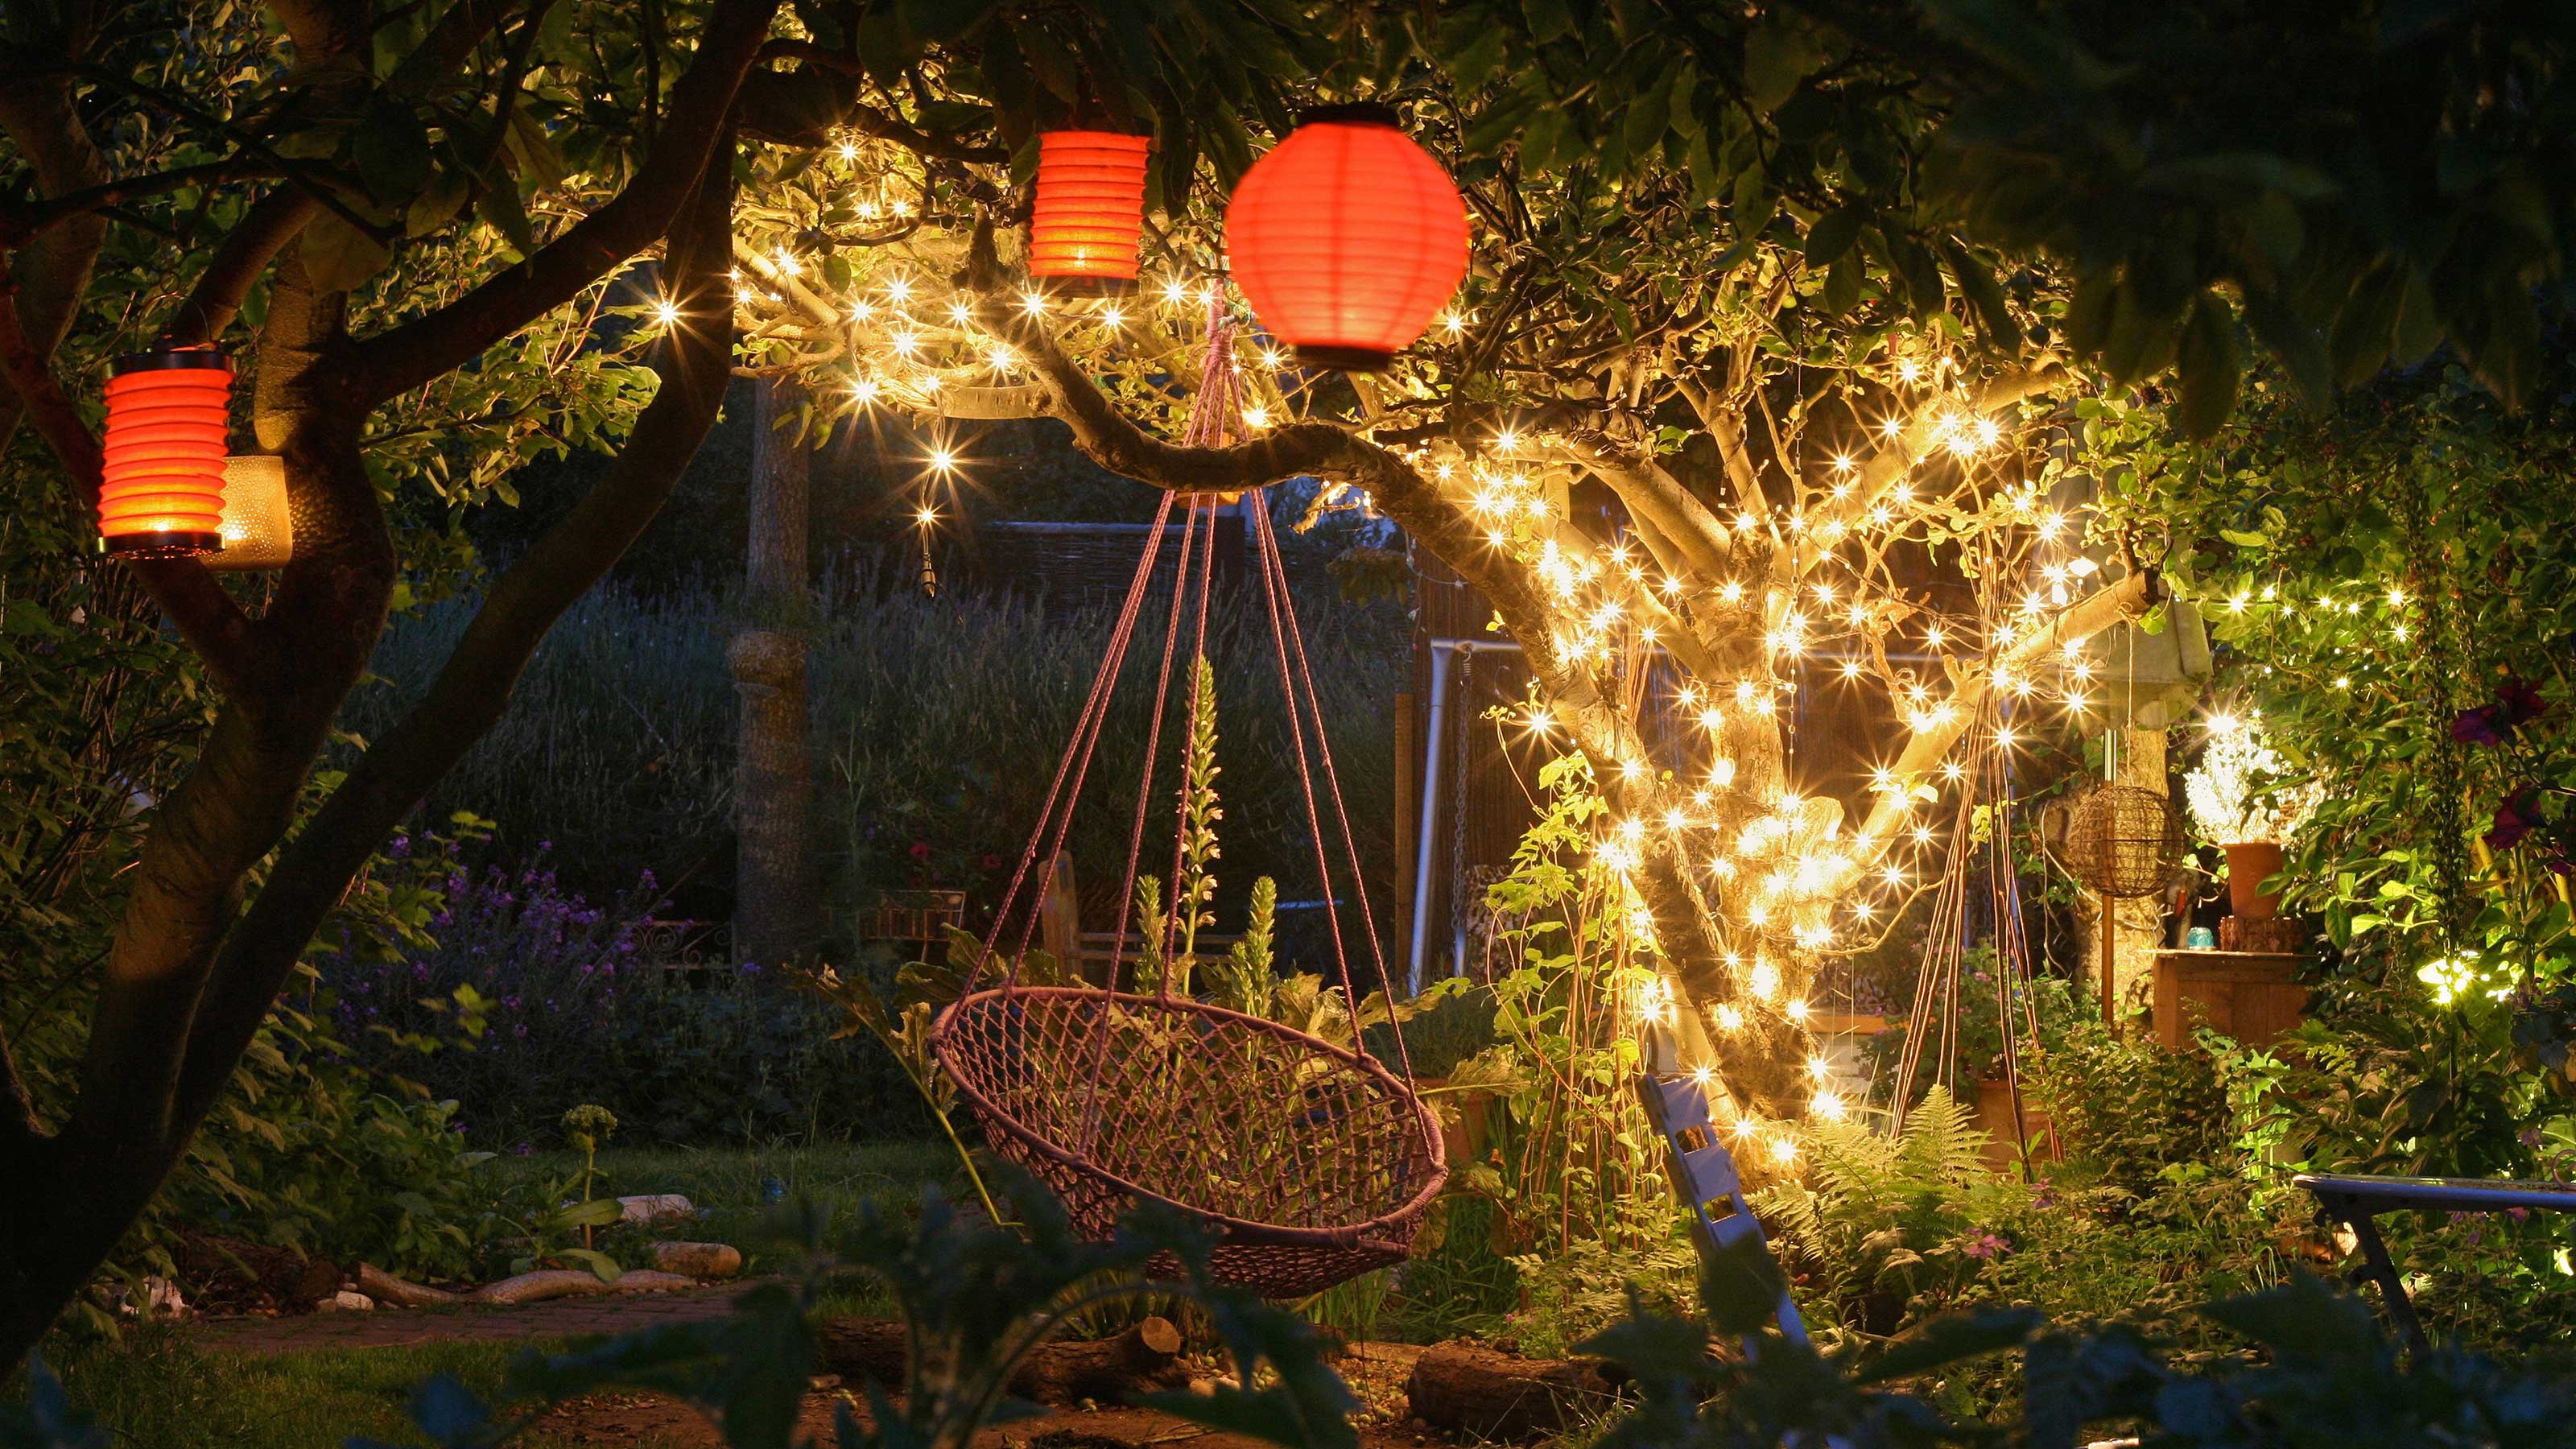 Outdoor String Light Ideas: 10 Ways To Create A Sparkling Garden Display |  Gardeningetc